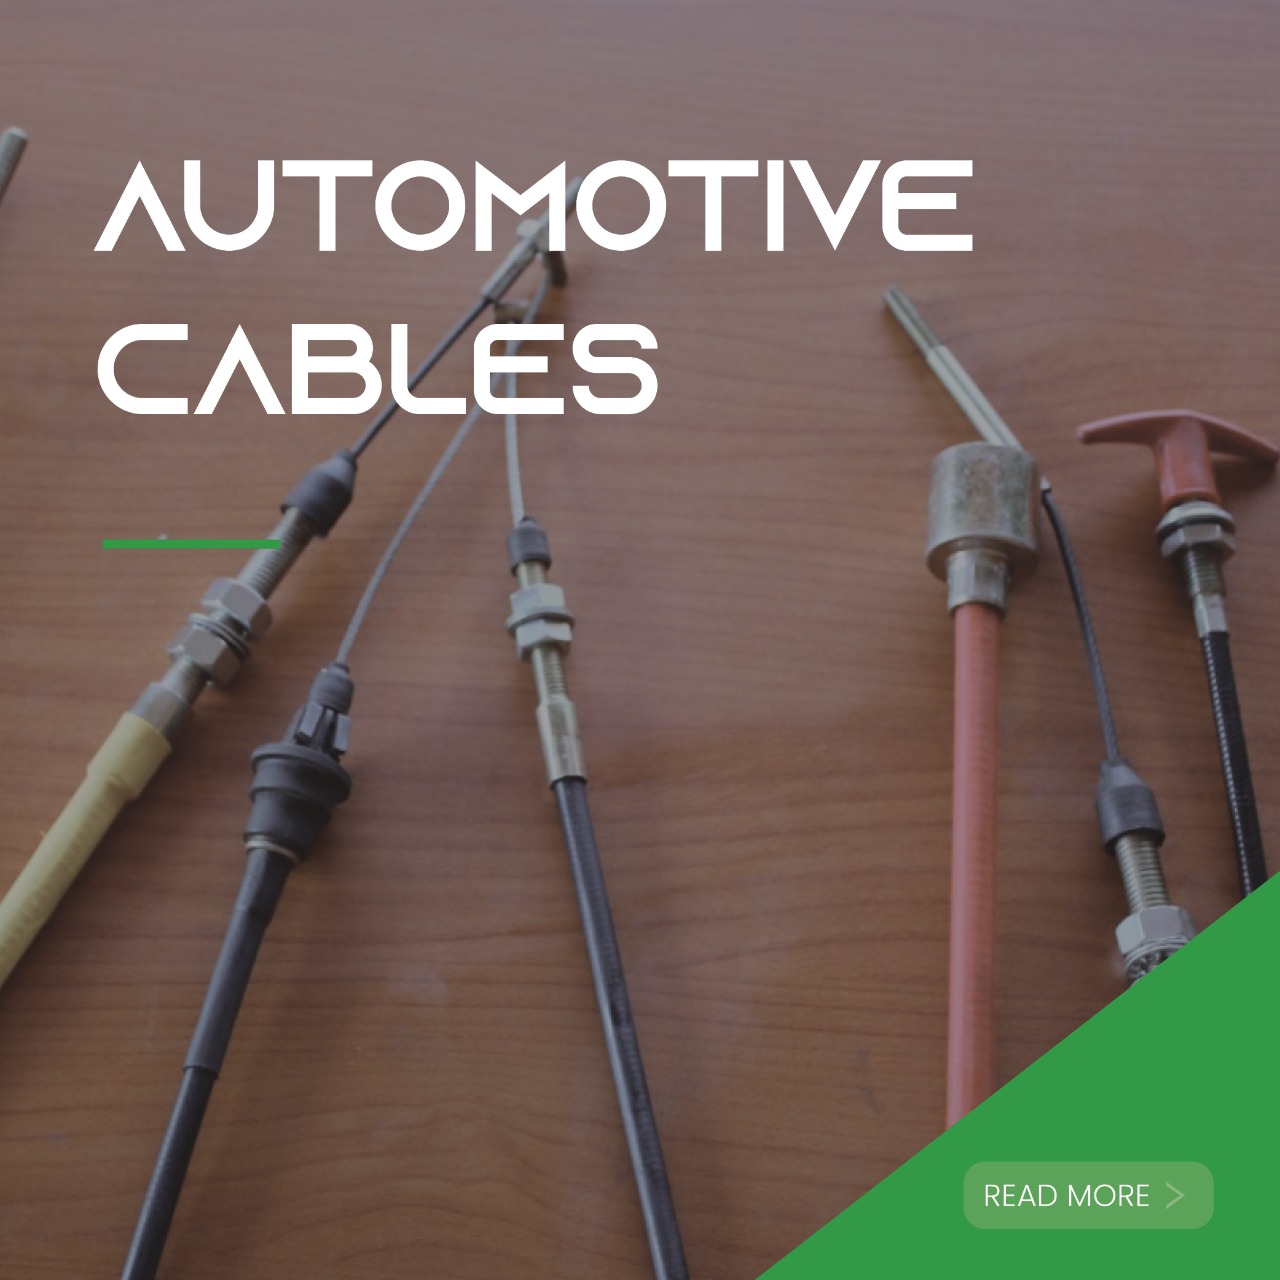 Cableman_automotive_cables